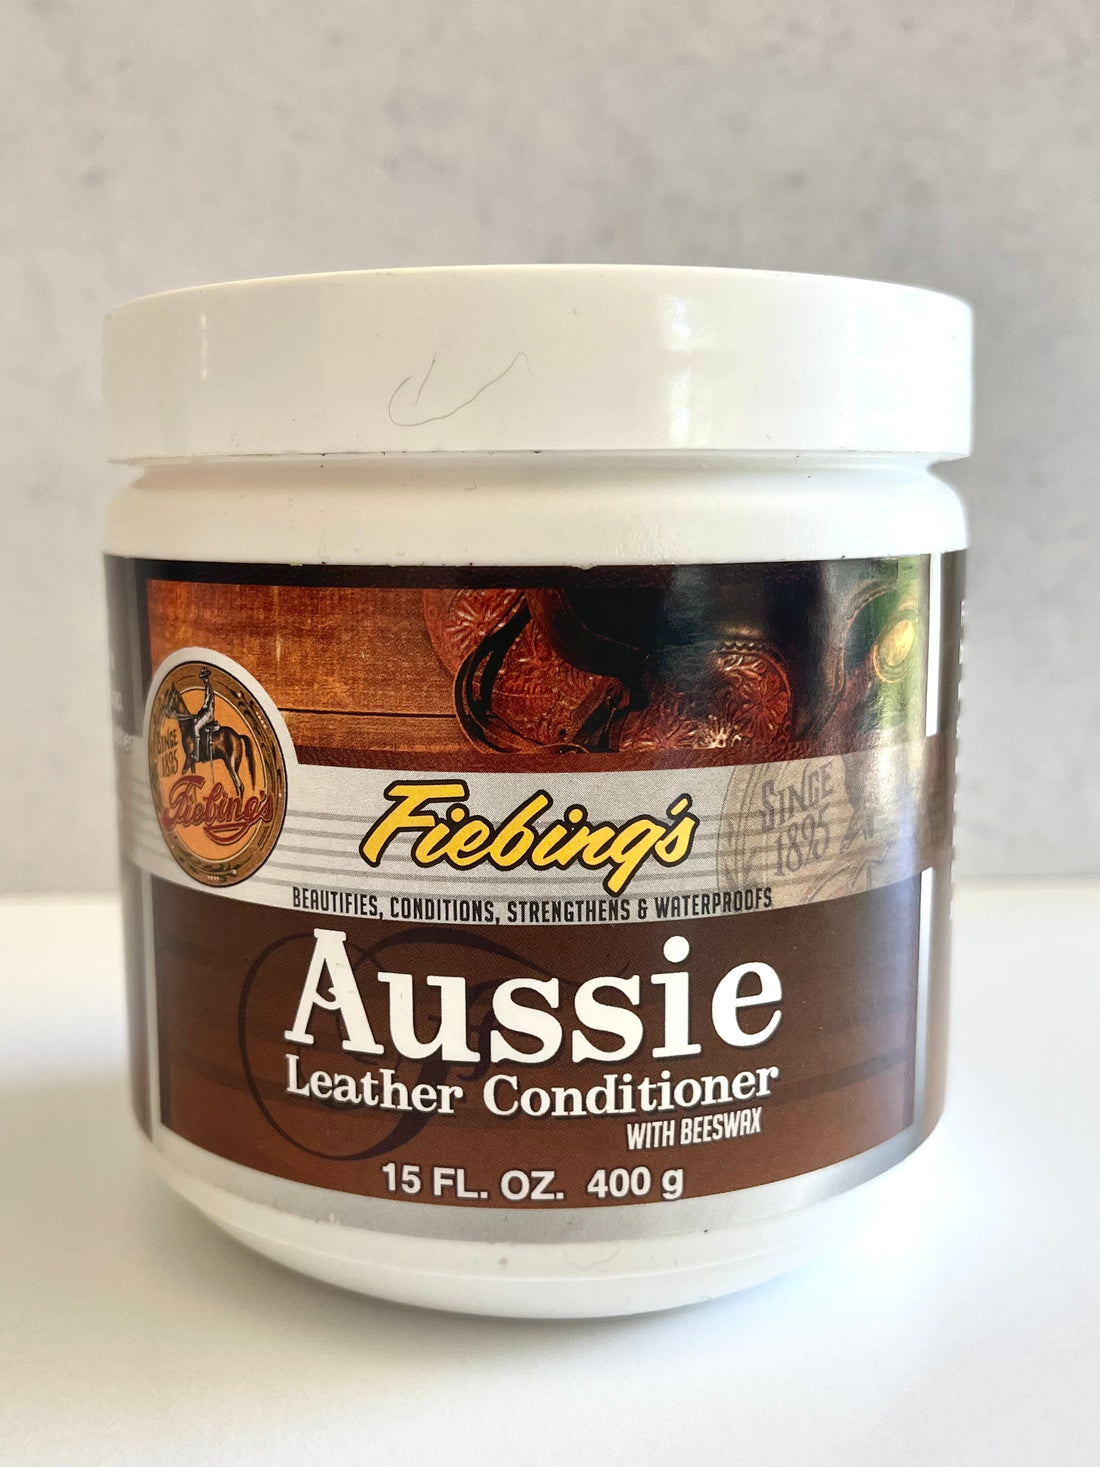 Fiebing’s Aussie Leather Conditioner